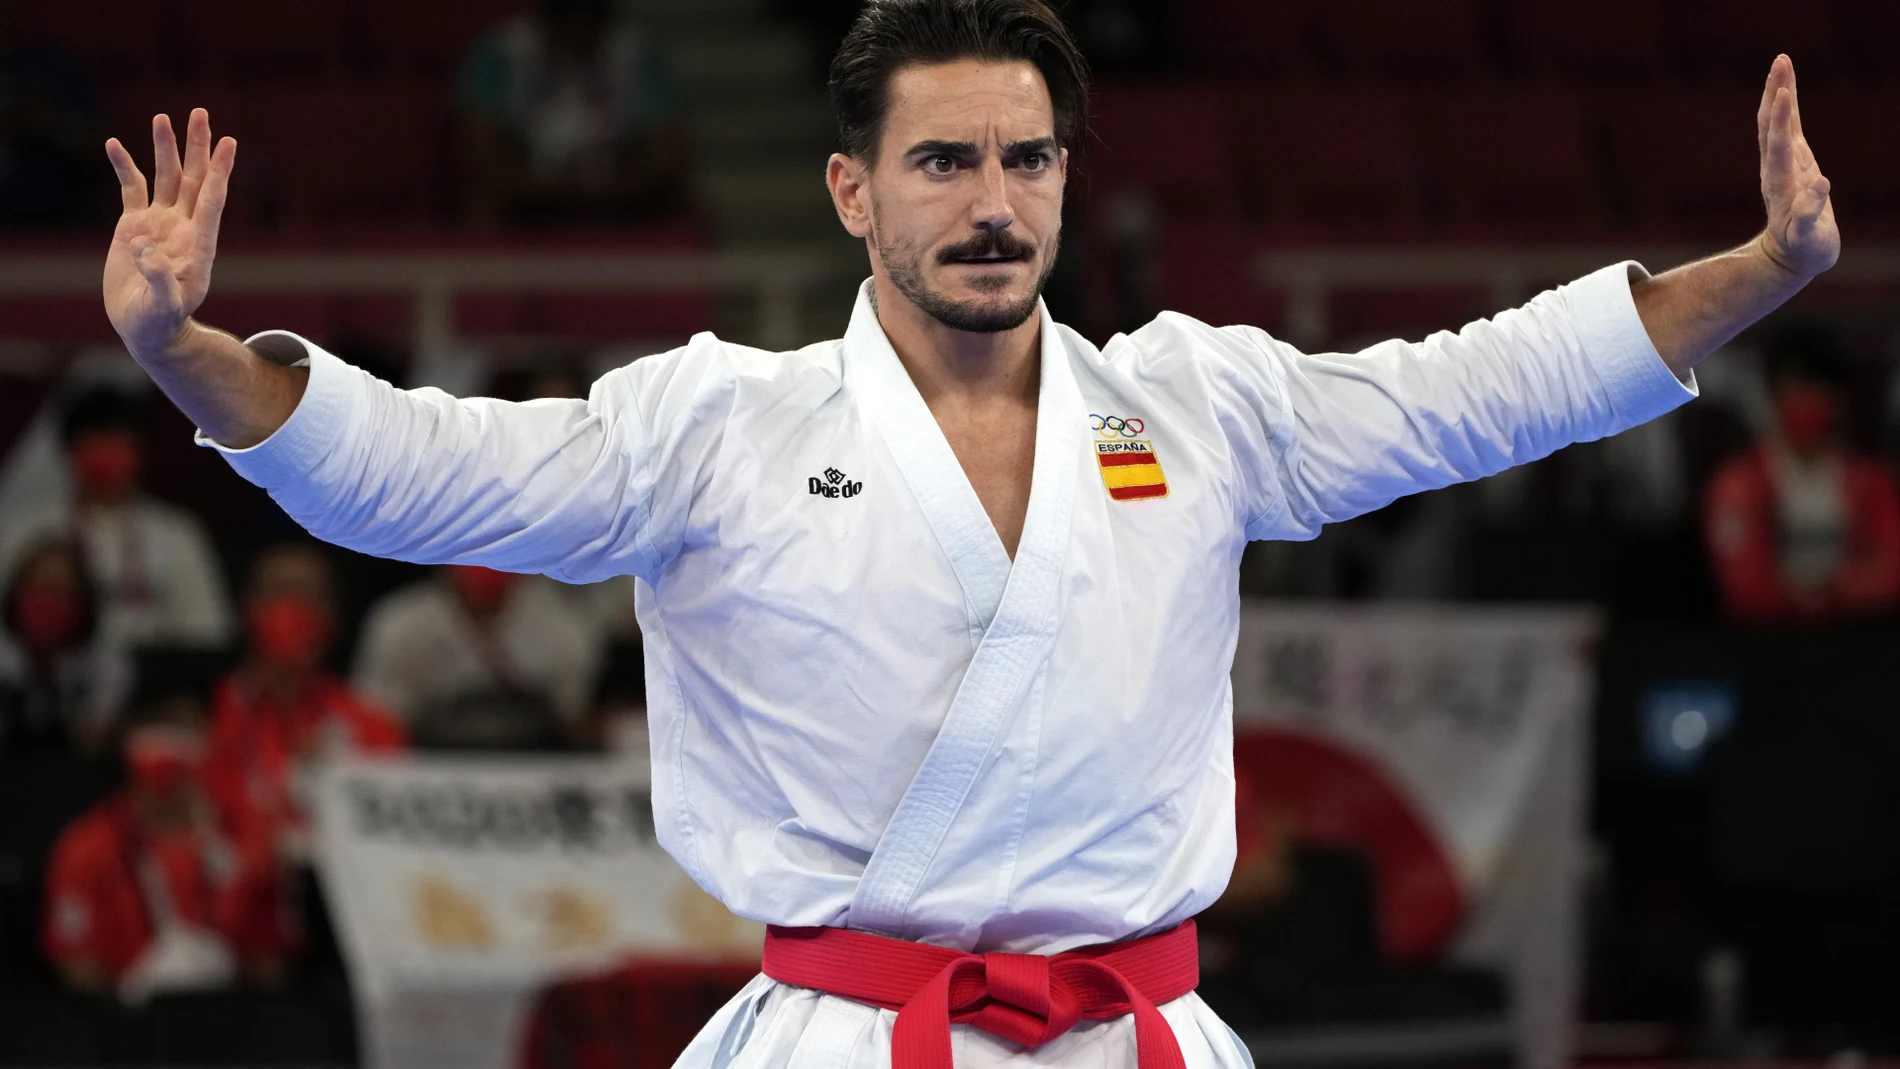 Locura en redes por Damián Quintero, el karateka español que enamora a Japón: "Qué guapo"